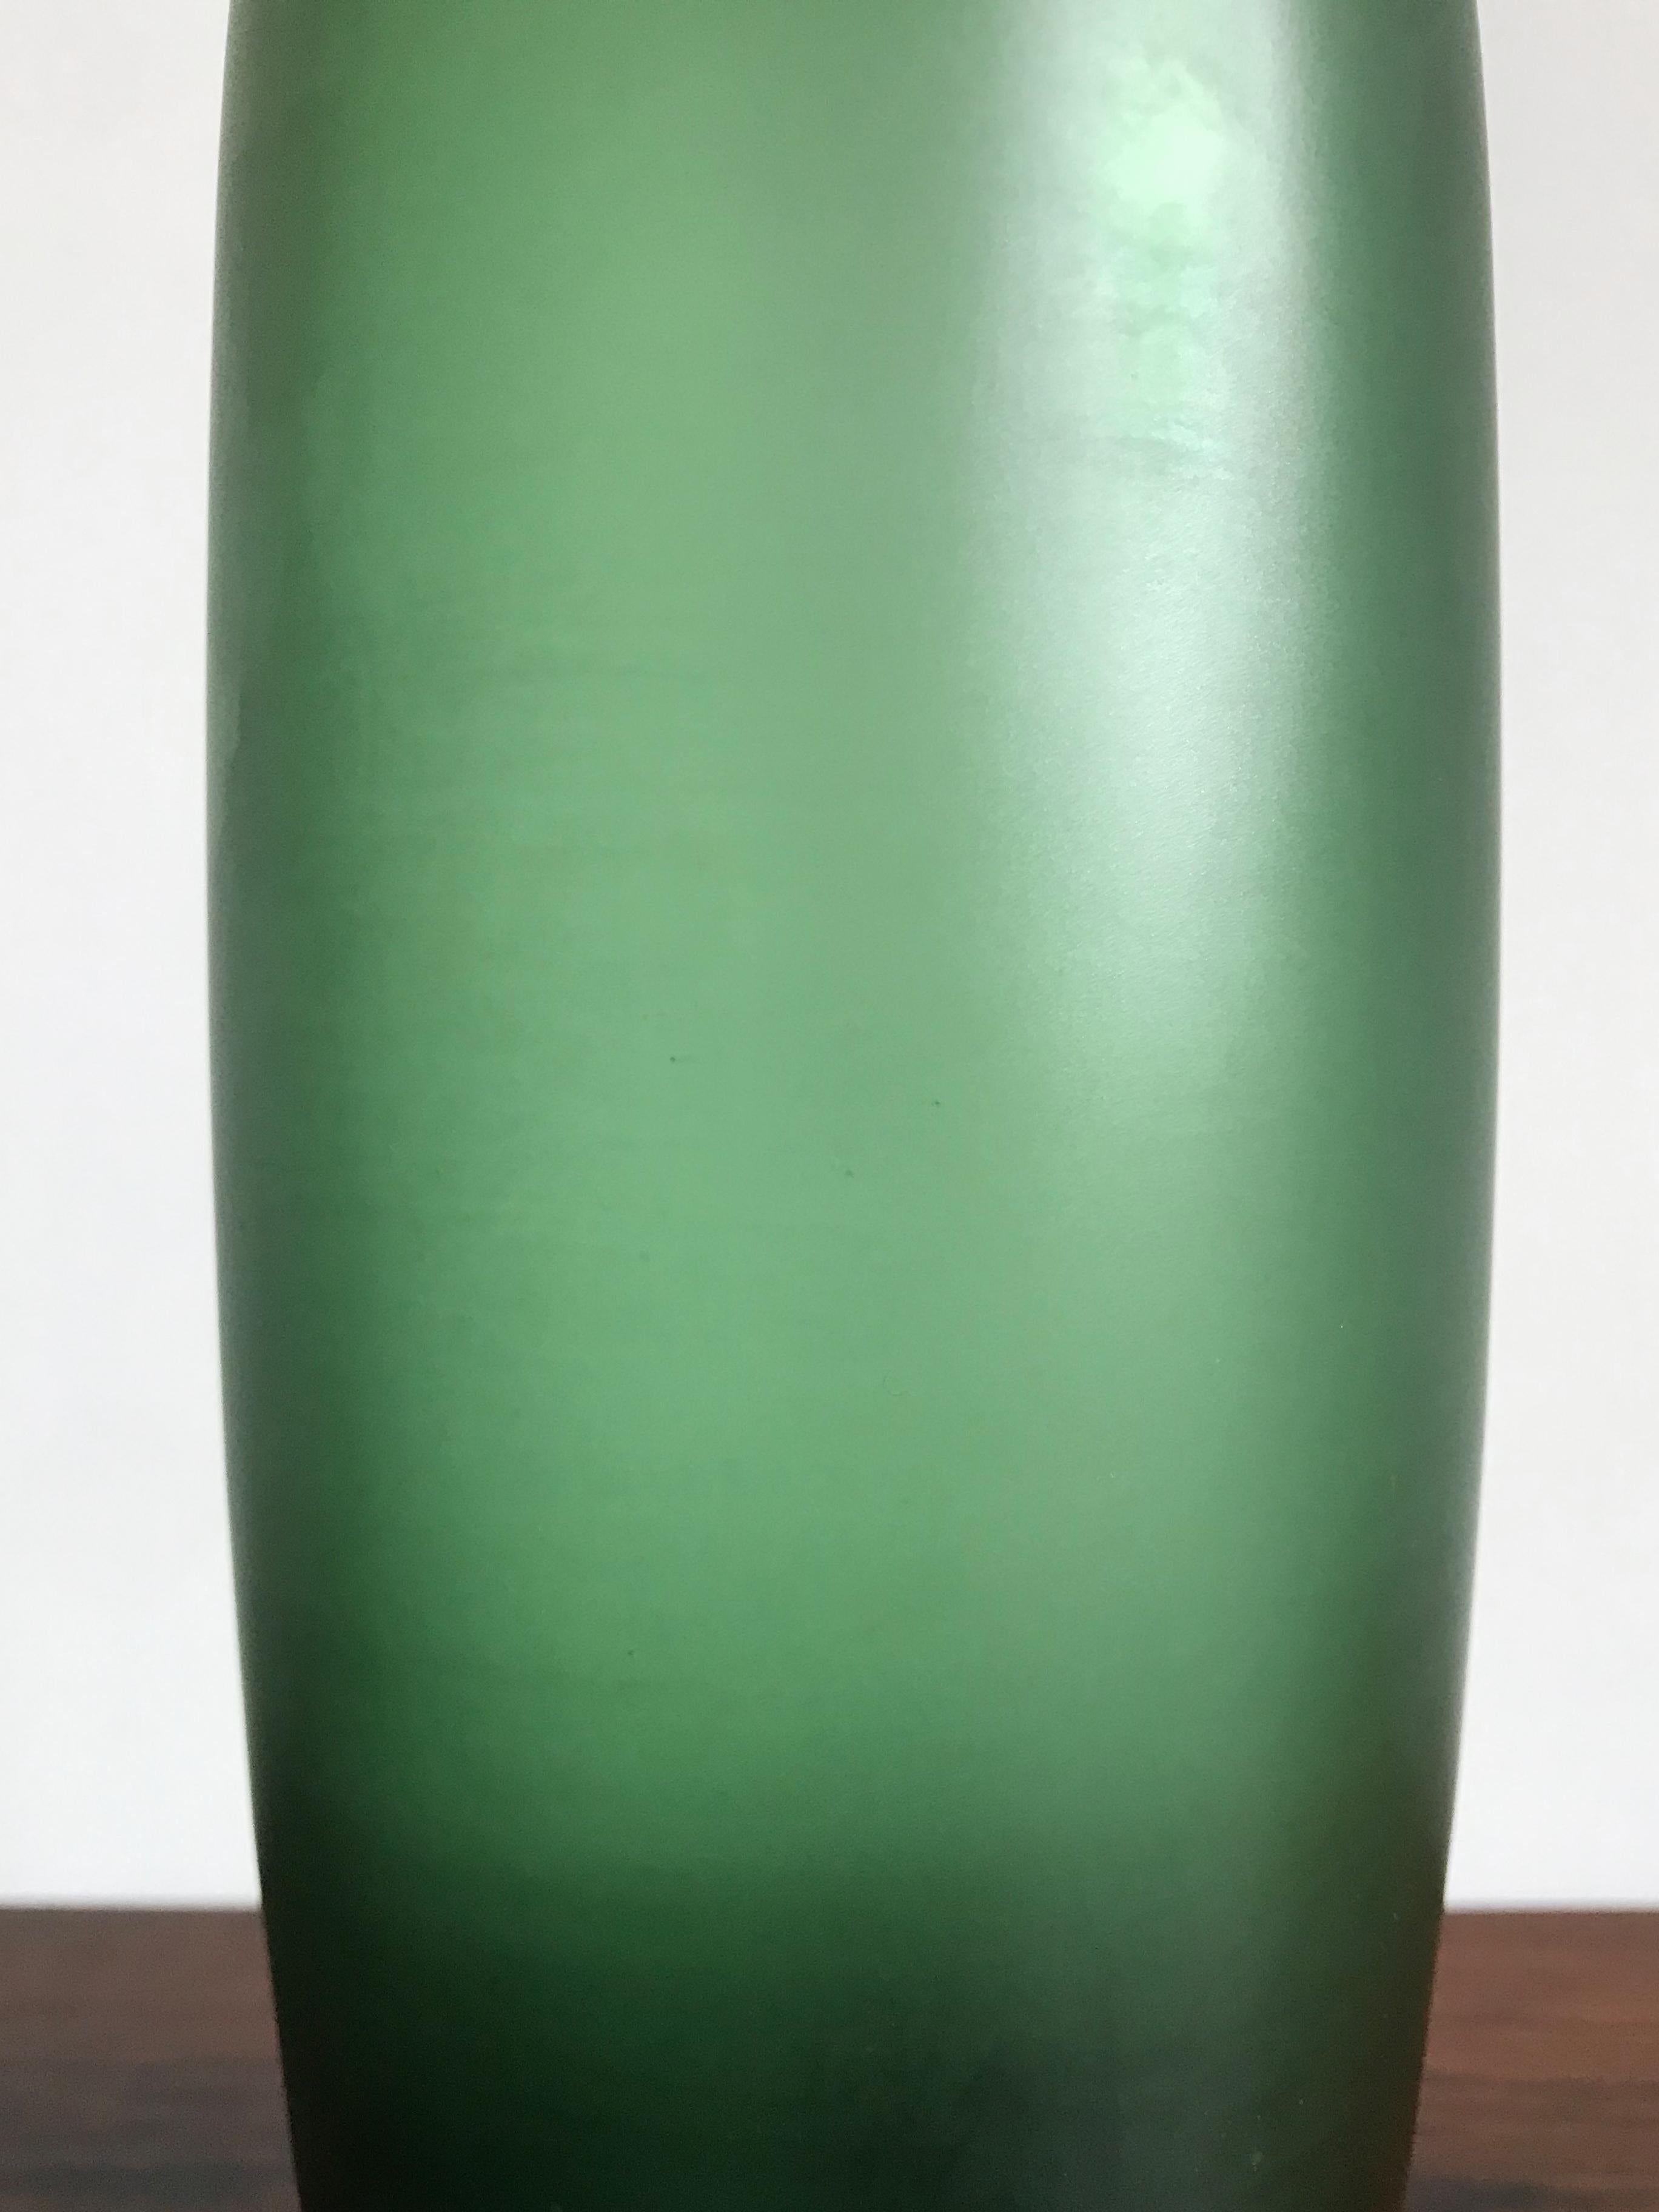 Venini Murano Italy Glass Green Bottle Serie “Velati”, 1981 In Good Condition For Sale In Reggio Emilia, IT